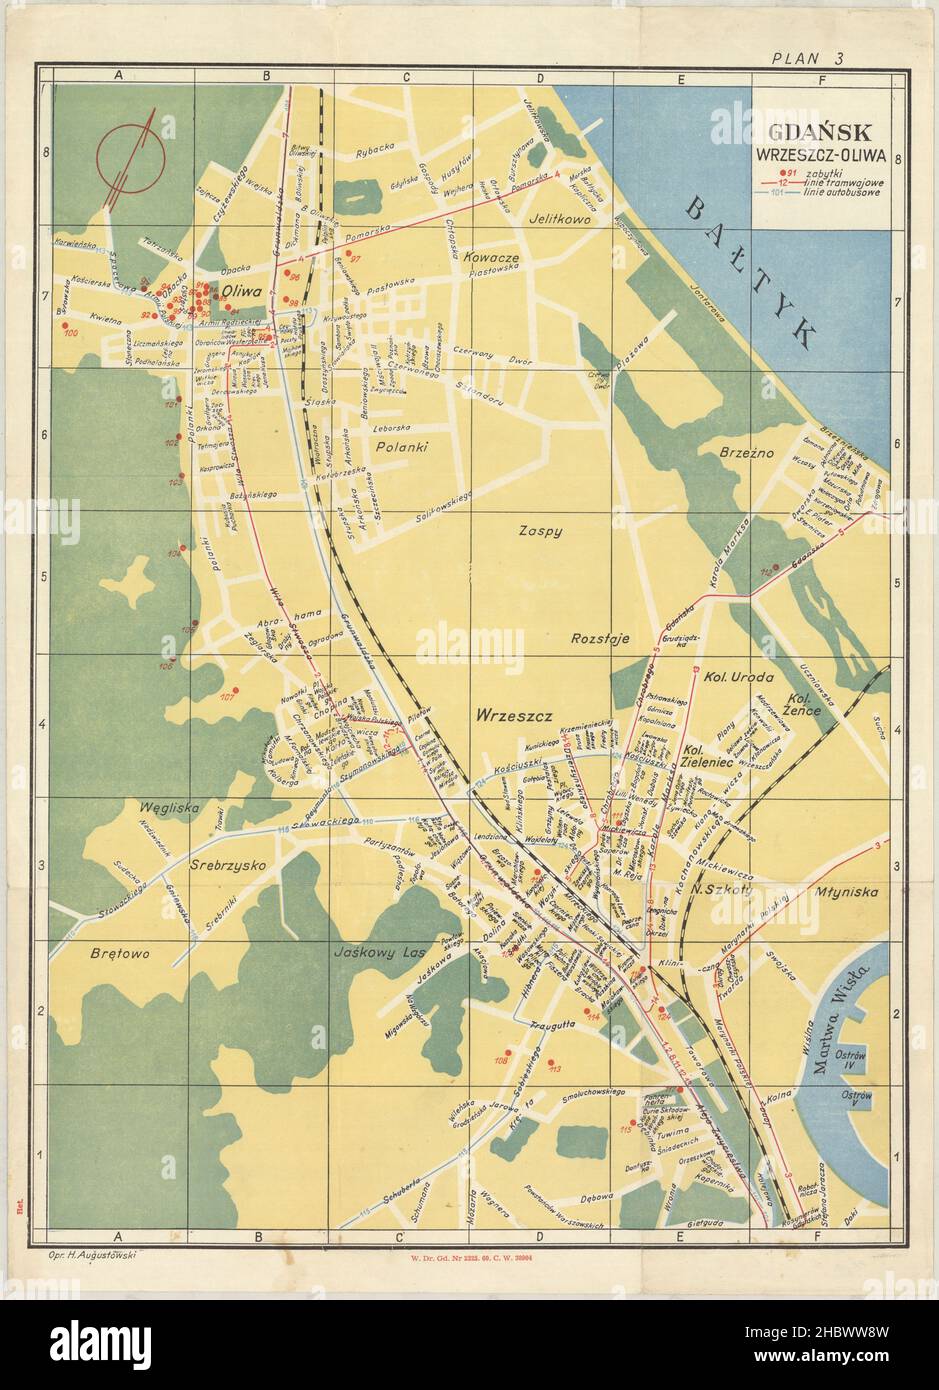 Karte von Danzig, Karte von Gdańsk, Karte von Gdańsk, Gdańsk Print, Gdańsk Maps, Gdańsk Plakat, Gdańsk Plan, Gdańsk Kunst, Gdańsk Kartenkunst, Danziger Wandkunst, Danzig-Karte Stockfoto